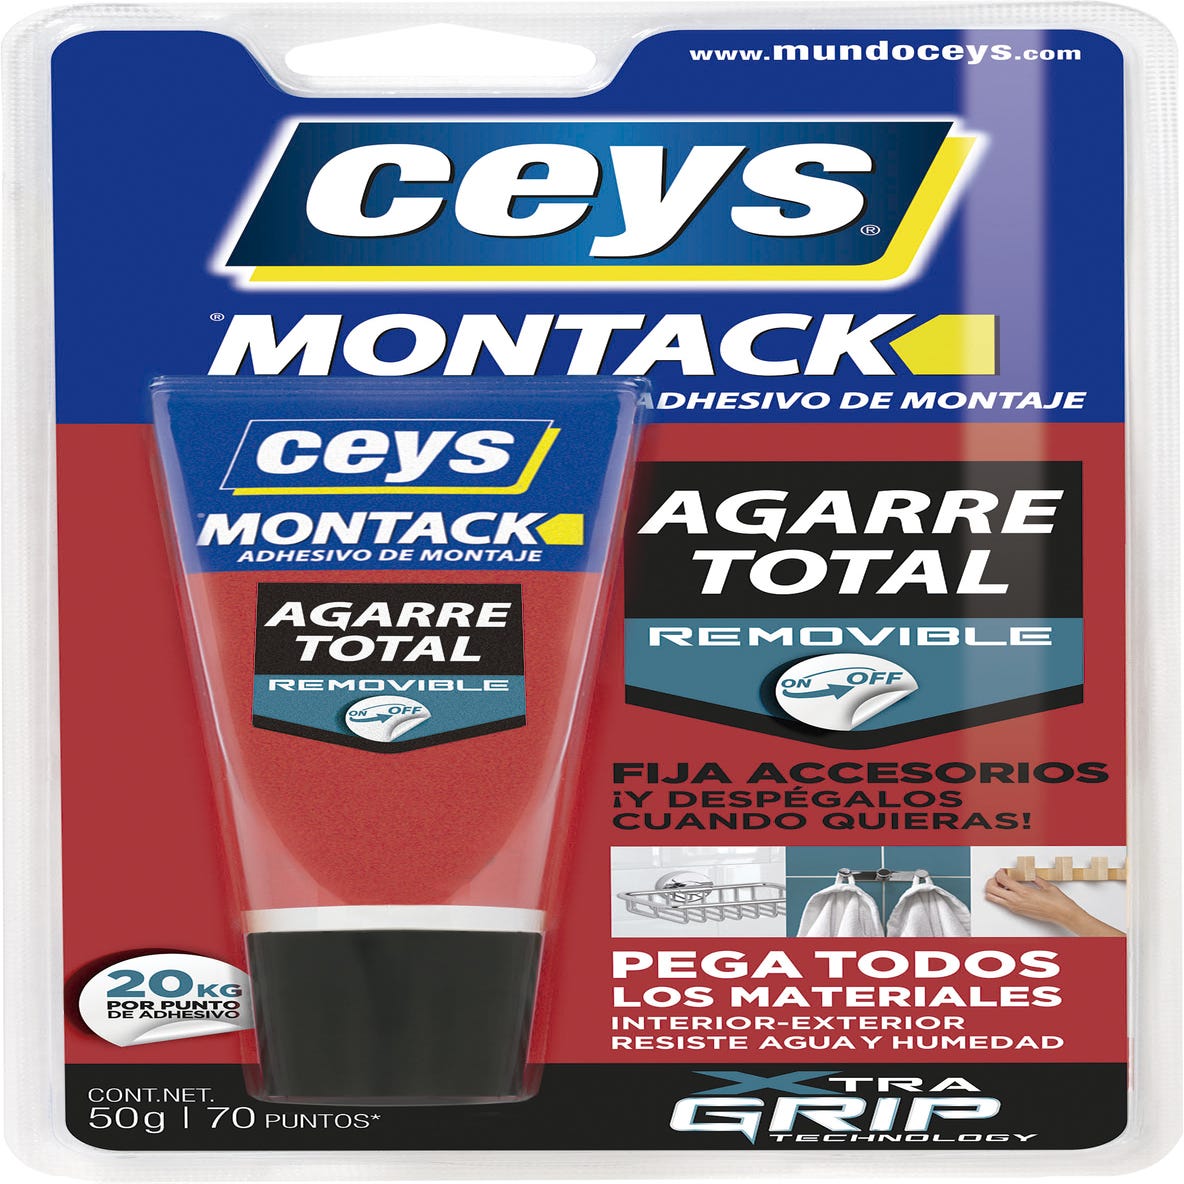 Adhesivo de montaje Montack Desmontable 50 gr